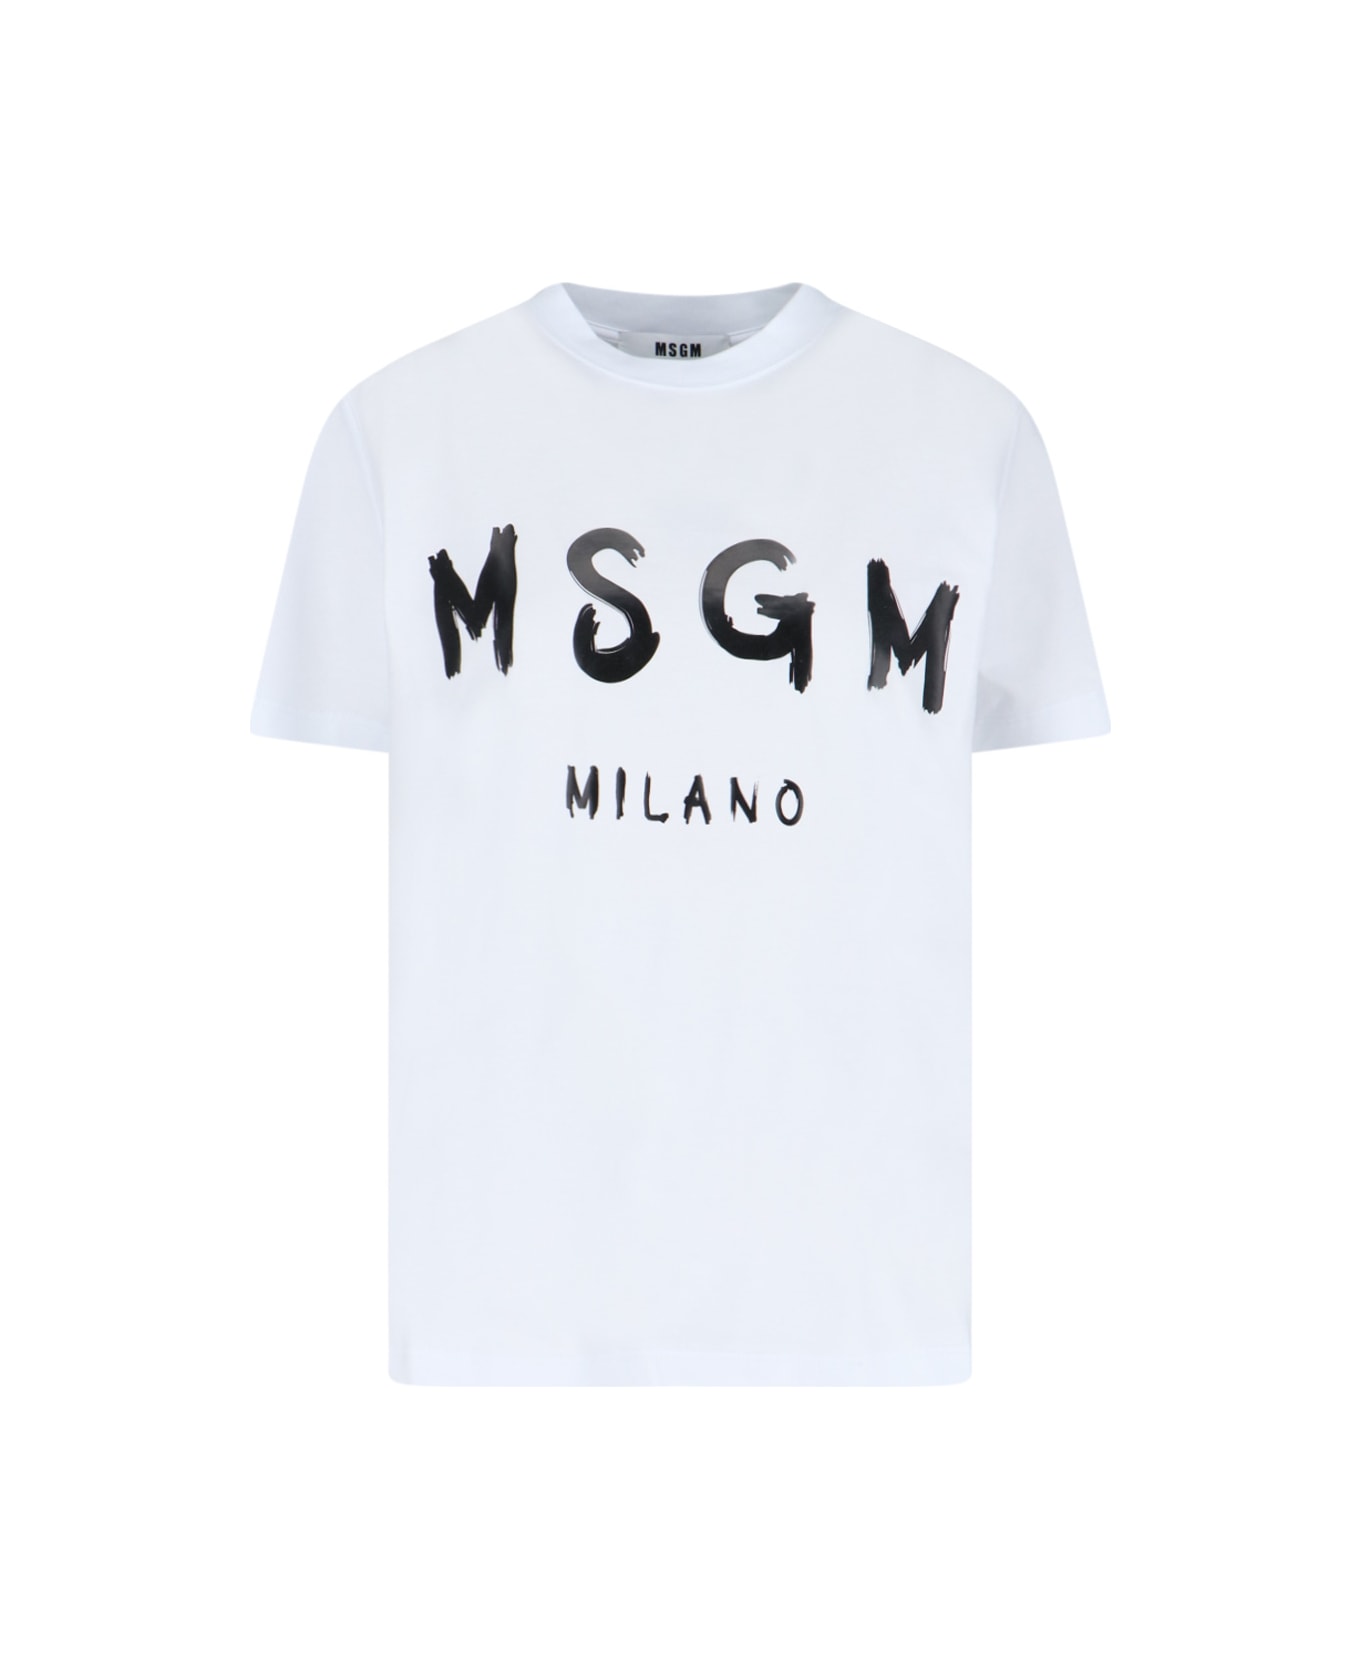 MSGM Logo T-shirt - White Tシャツ